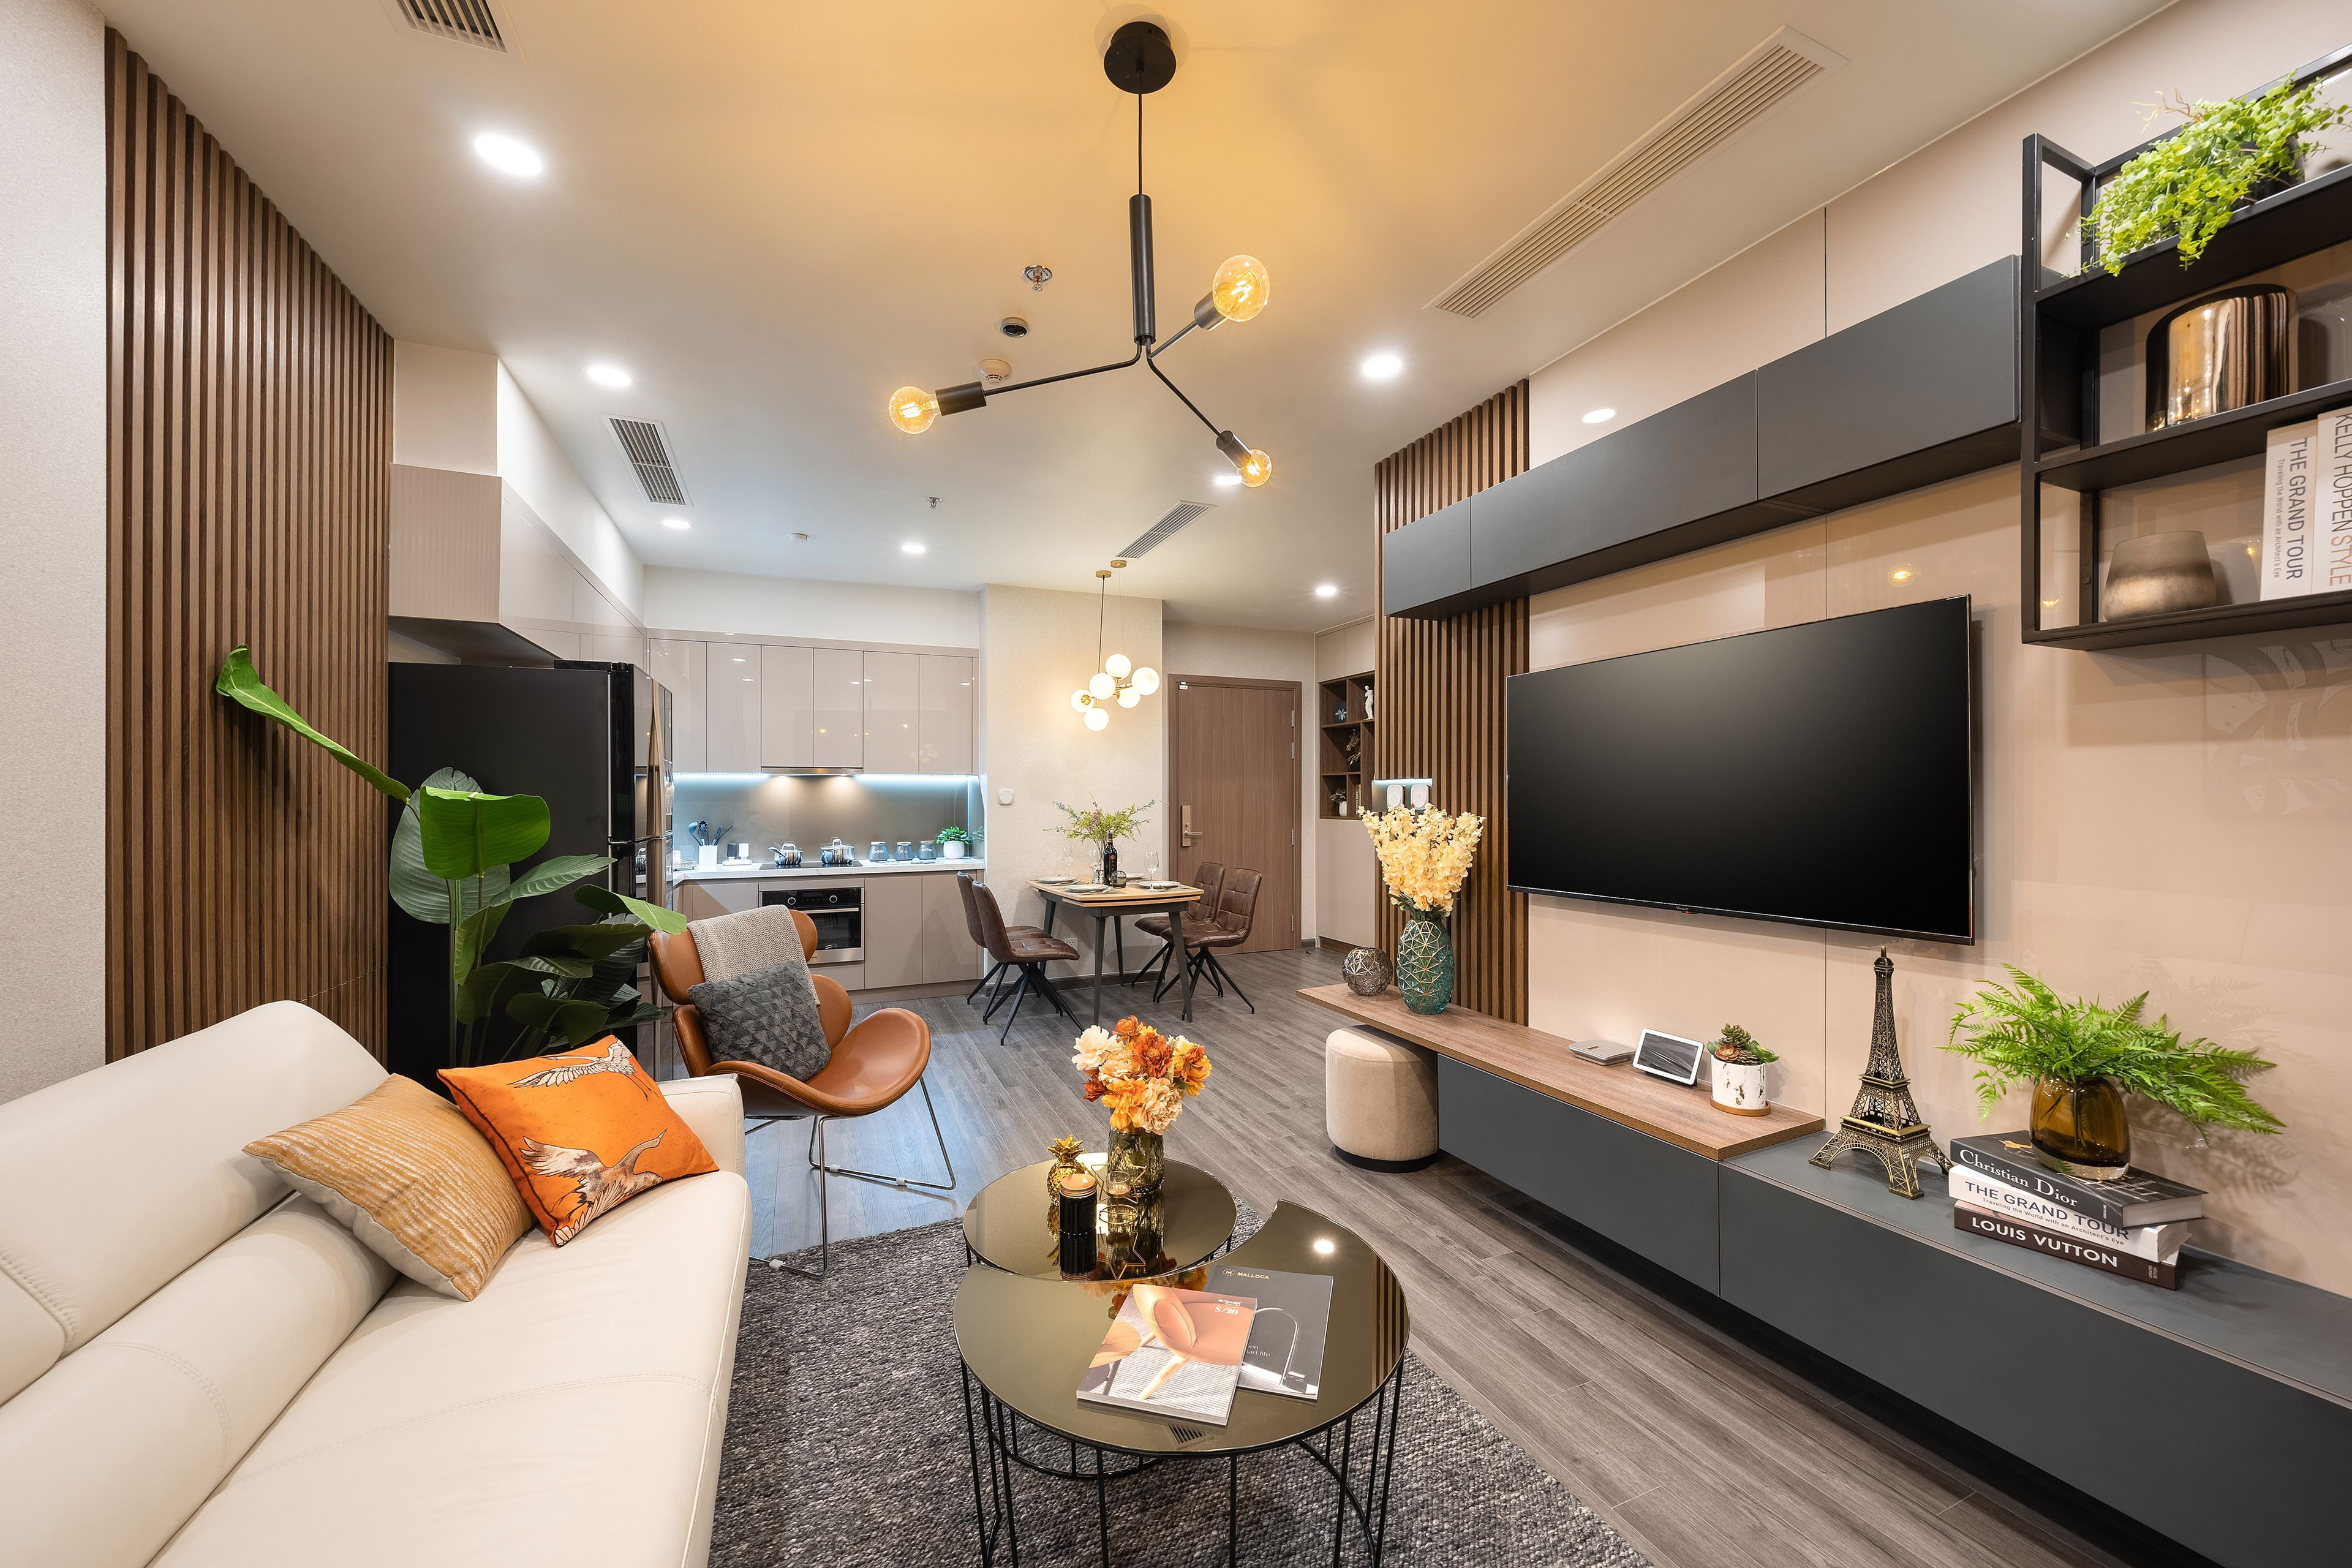 Giá mua bán căn hộ 2 phòng ngủ rẻ nhất và đắt nhất quận Bình Tân là bao nhiêu?